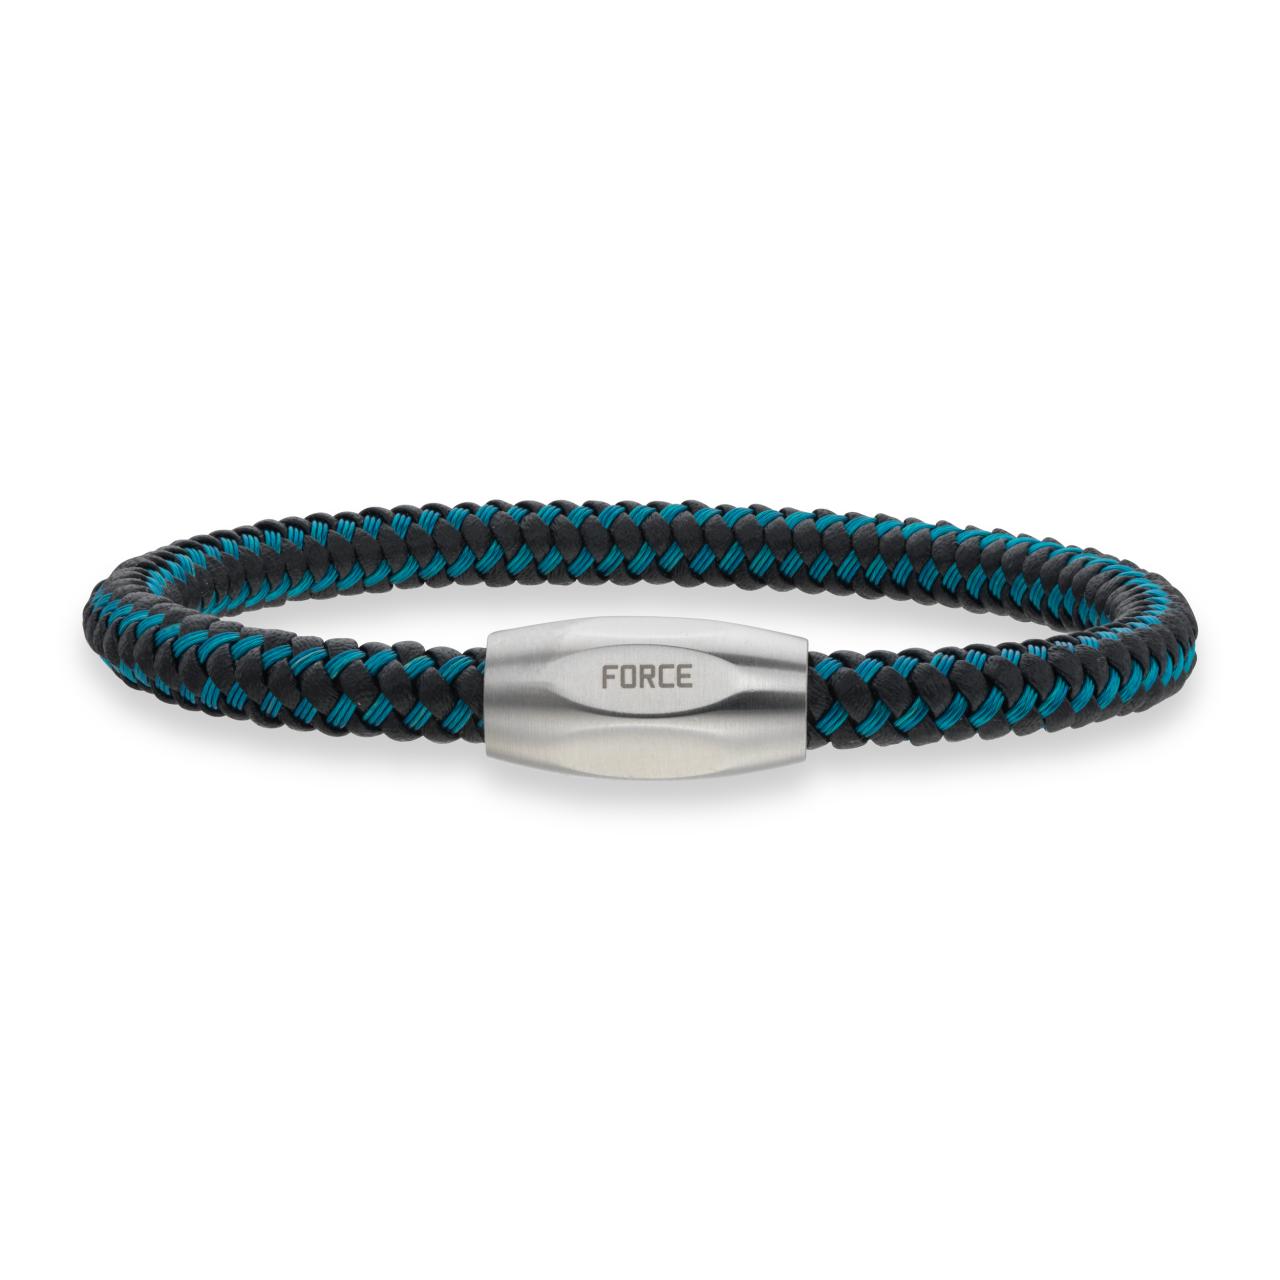 Force armbånd blå kabel/sort læder stål lås 21cm